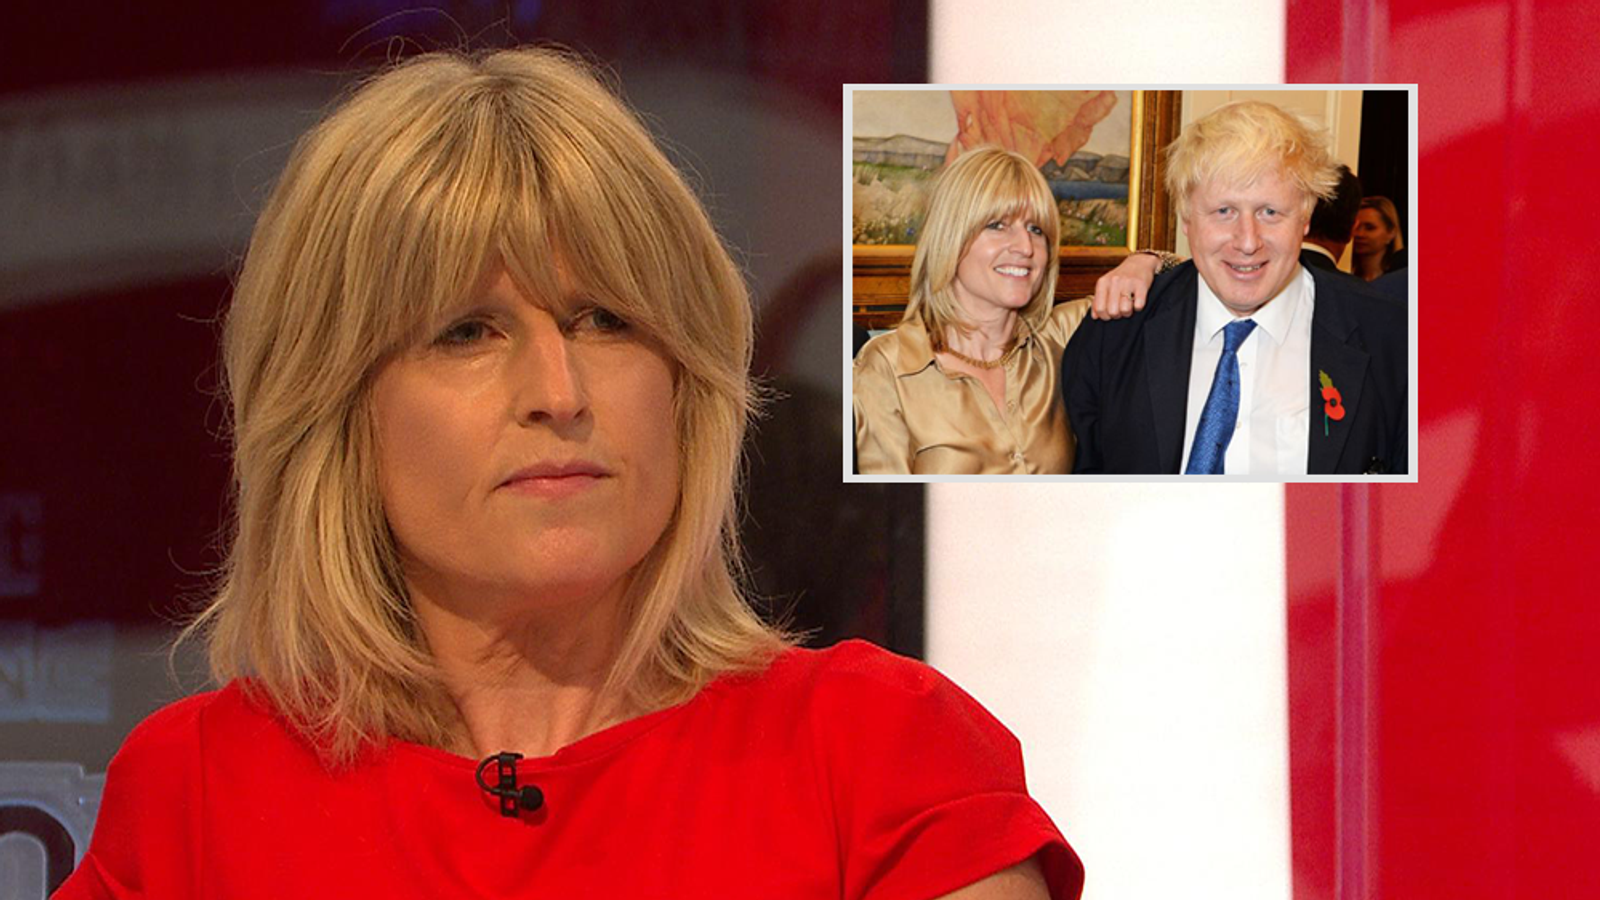 WATCH: Boris Johnsons Sister Strips on UKs Sky TV to 